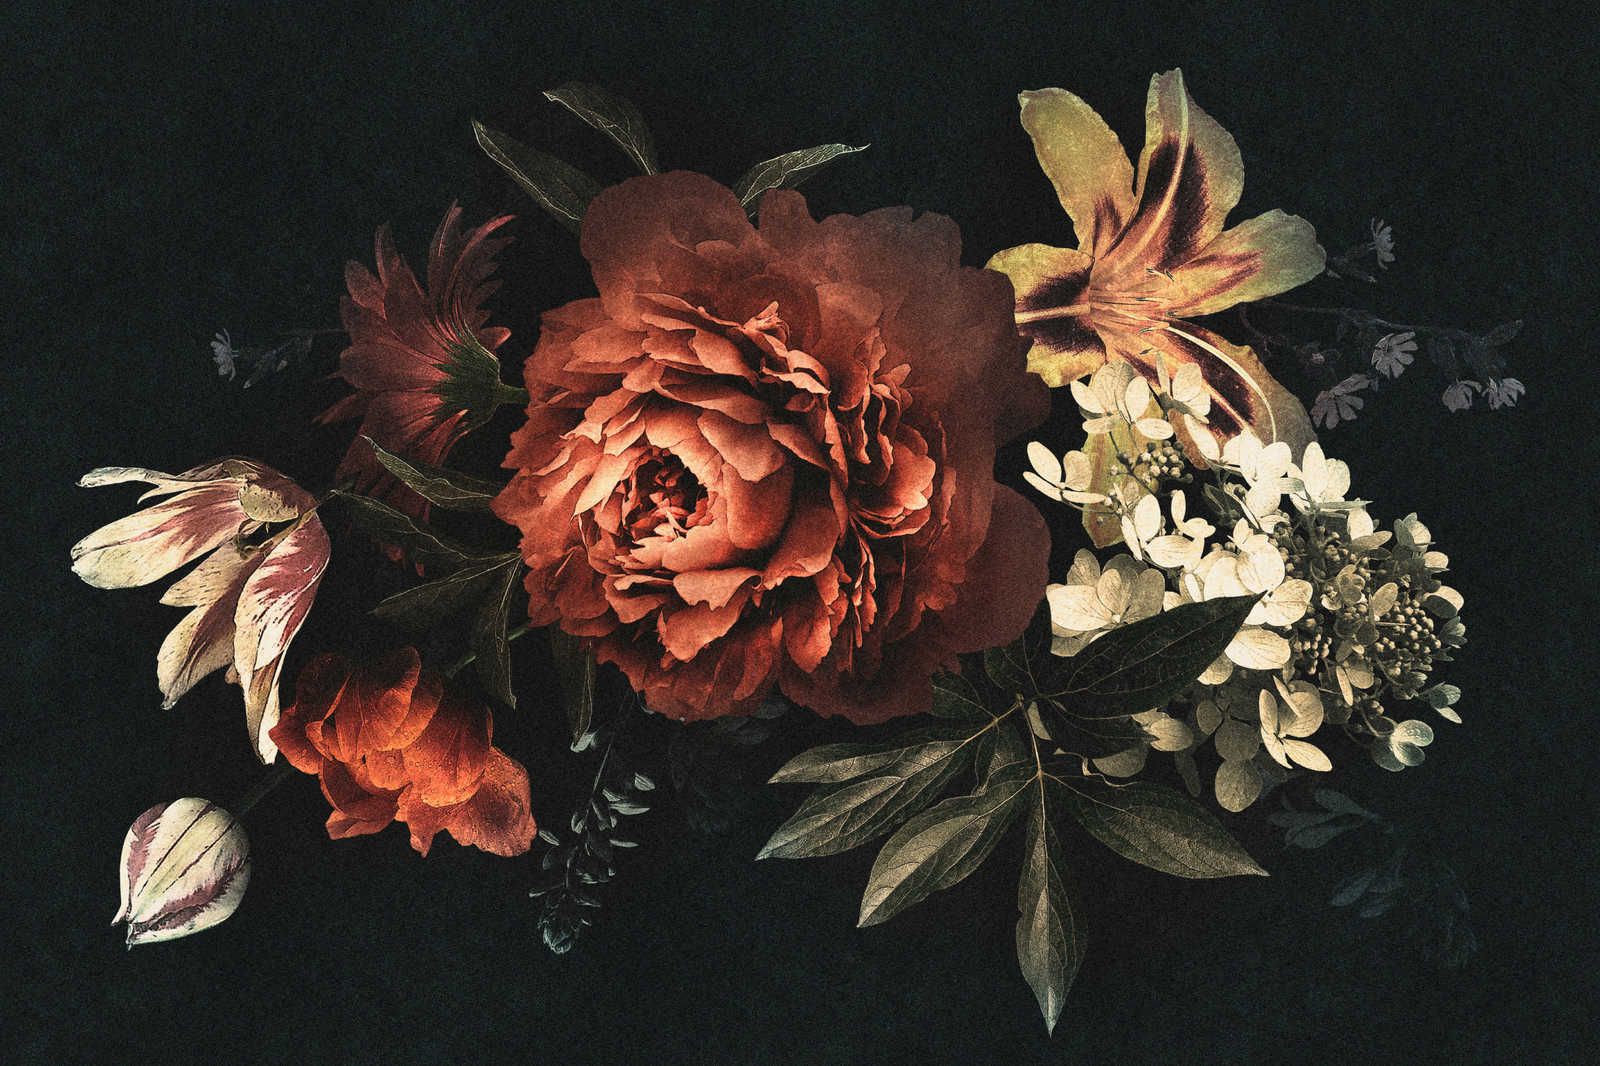             Drama queen 1 - Bouquet de fleurs Tableau sur toile avec fond sombre - 1,20 m x 0,80 m
        